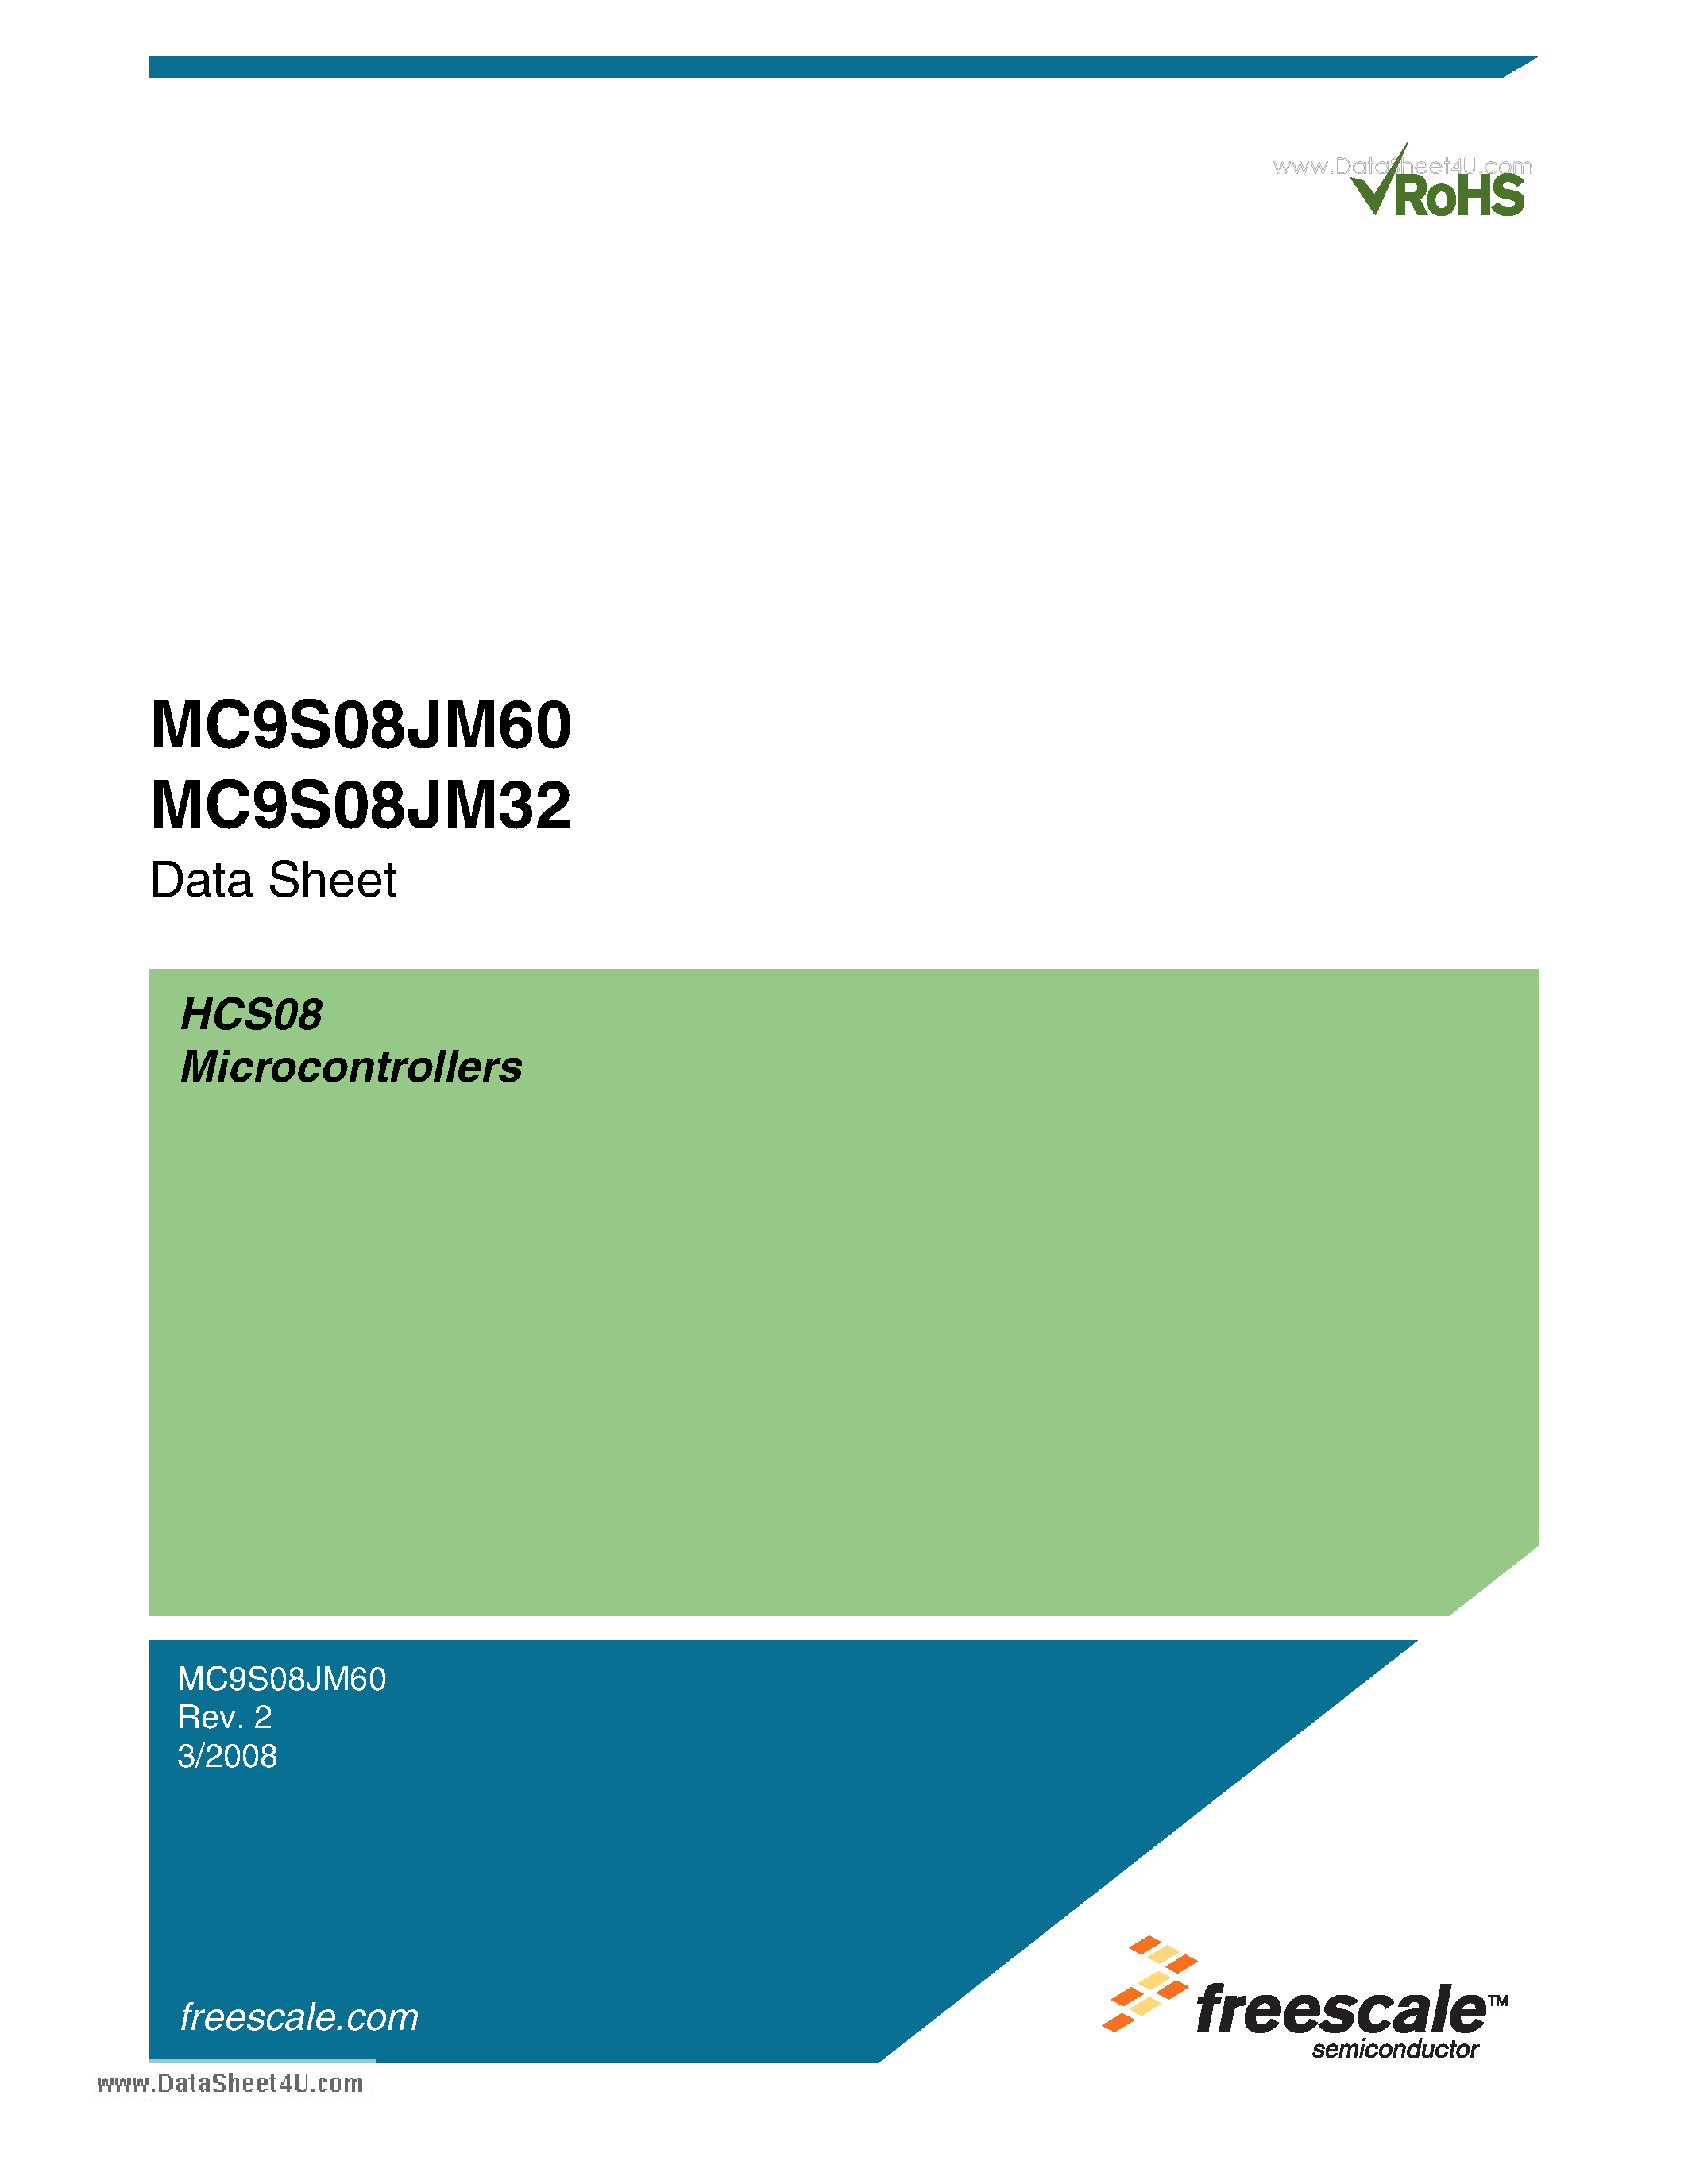 Даташит MC9S08JM32 - (MC9S08JM32 / MC9S08JM60) Microcontrollers страница 1